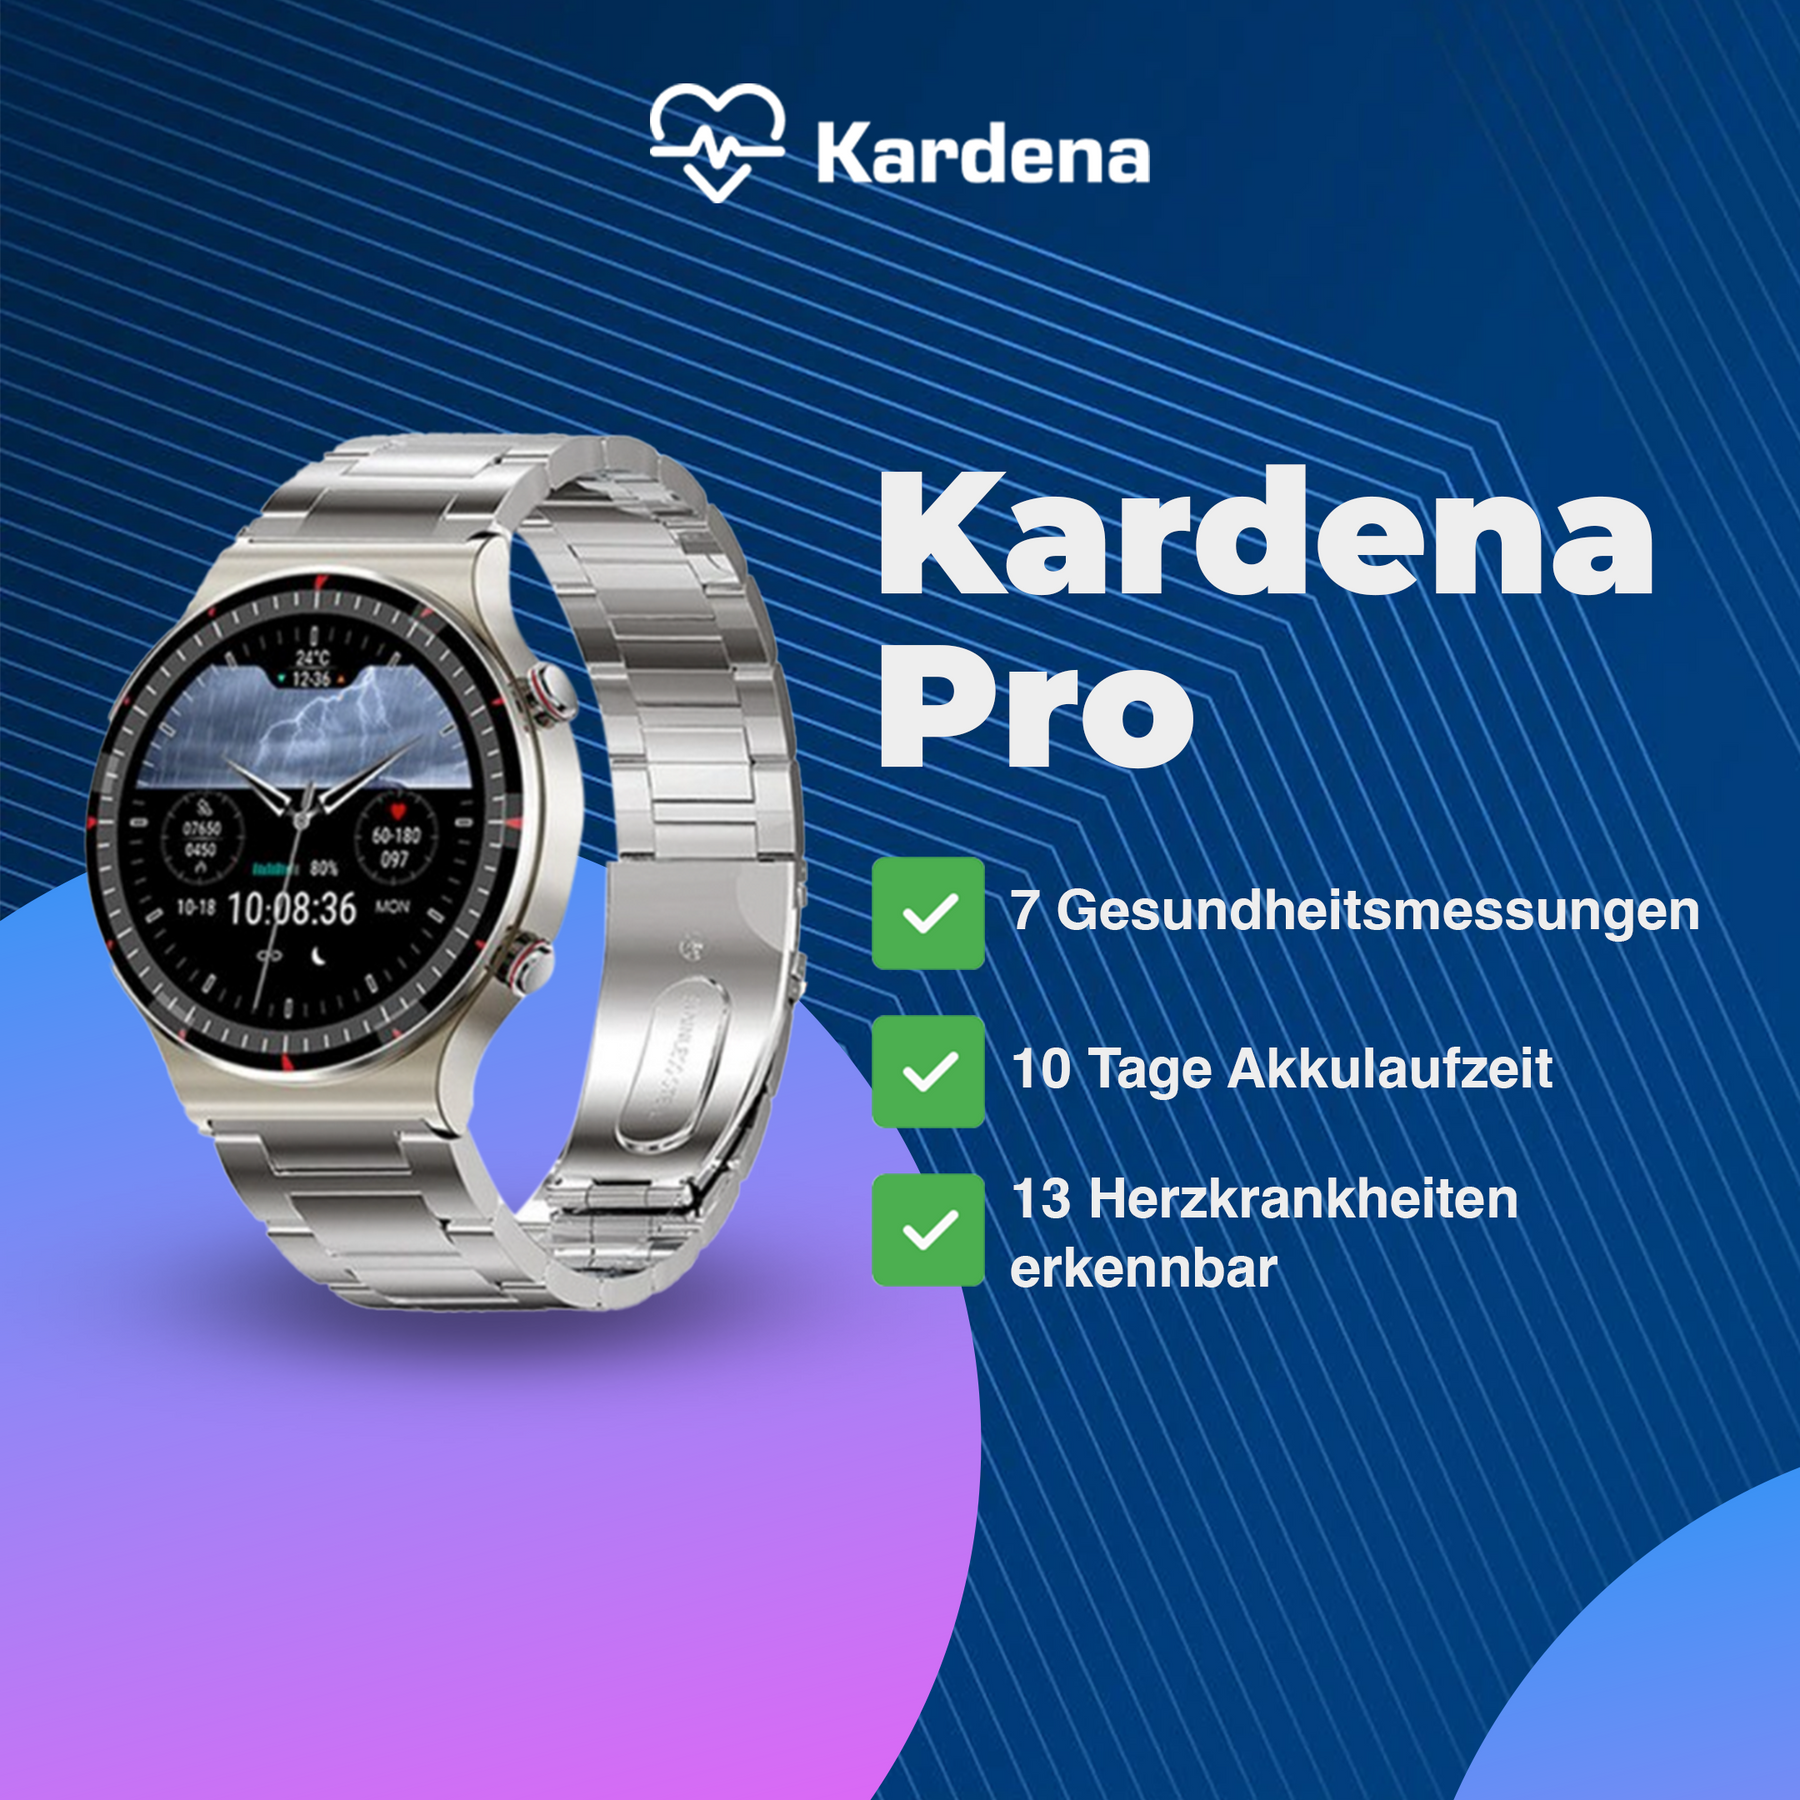 Kardena® CARE Pro 2